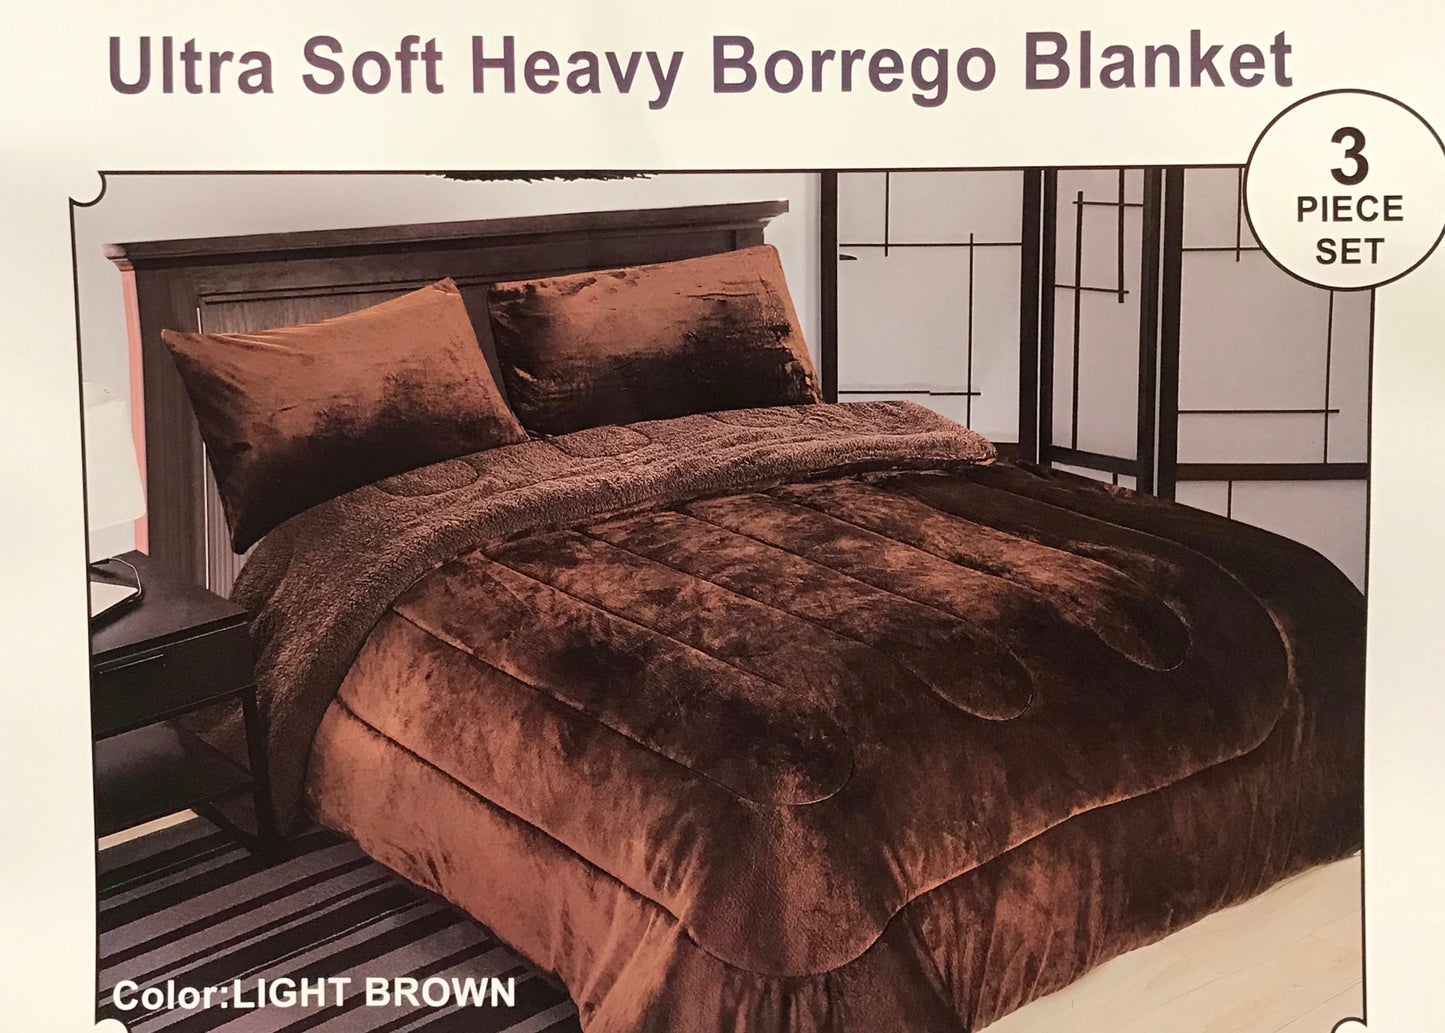 Ultra Soft Heavy Borrego Blanket 3pcs set